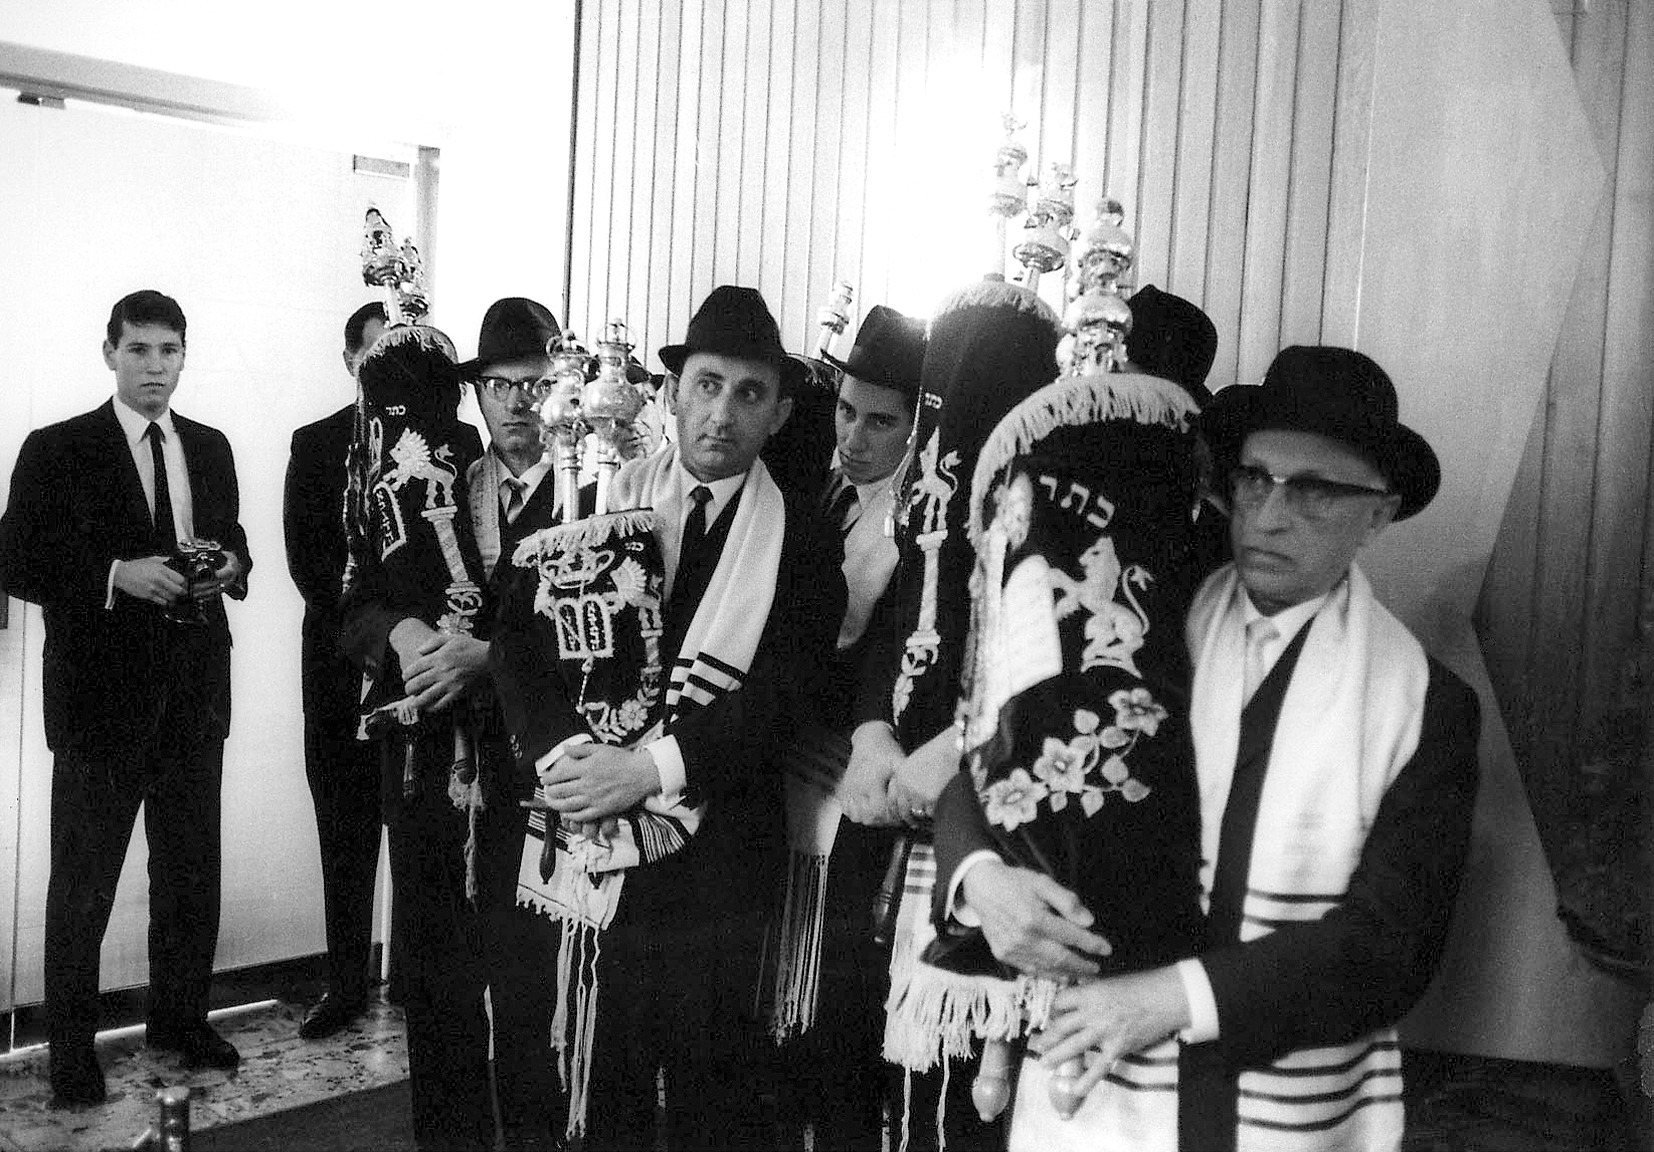 L'inauguration solennelle du nouveau bâtiment de la synagogue le 11 septembre 1966. Photographe : Adolf Diamant. Collection Adolf Diamant